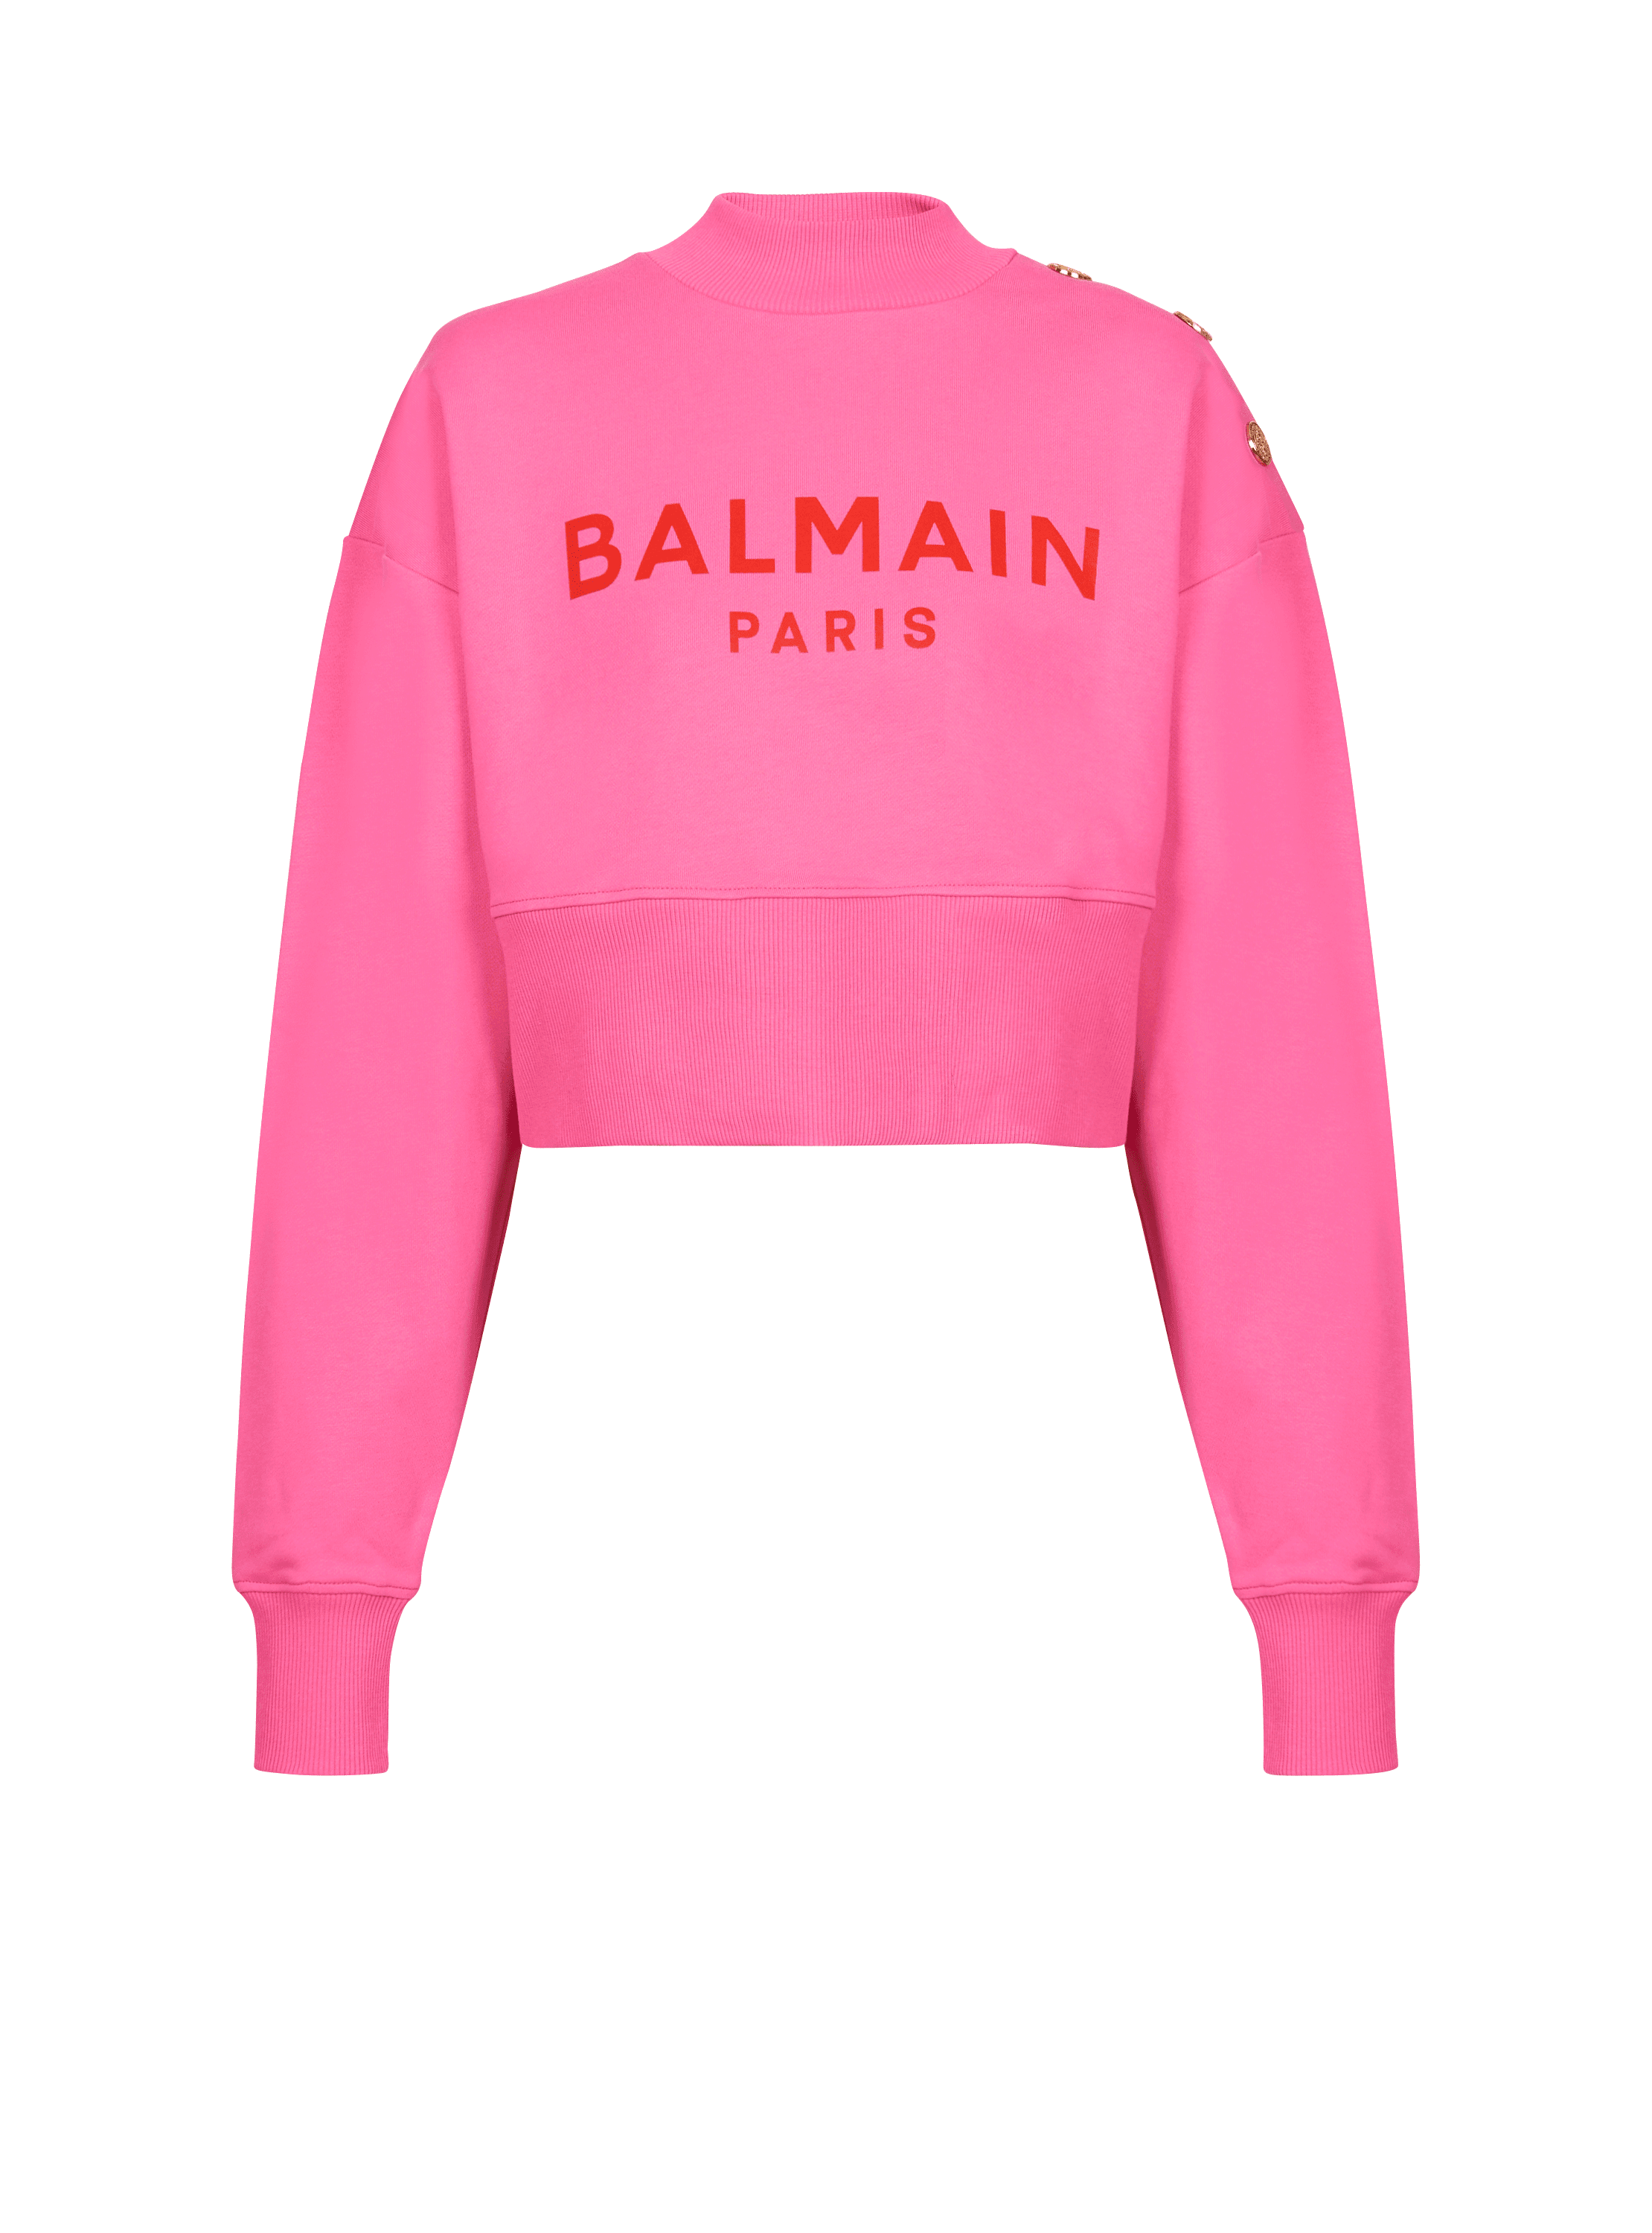 Kurzes Sweatshirt mit Balmain Paris-Print